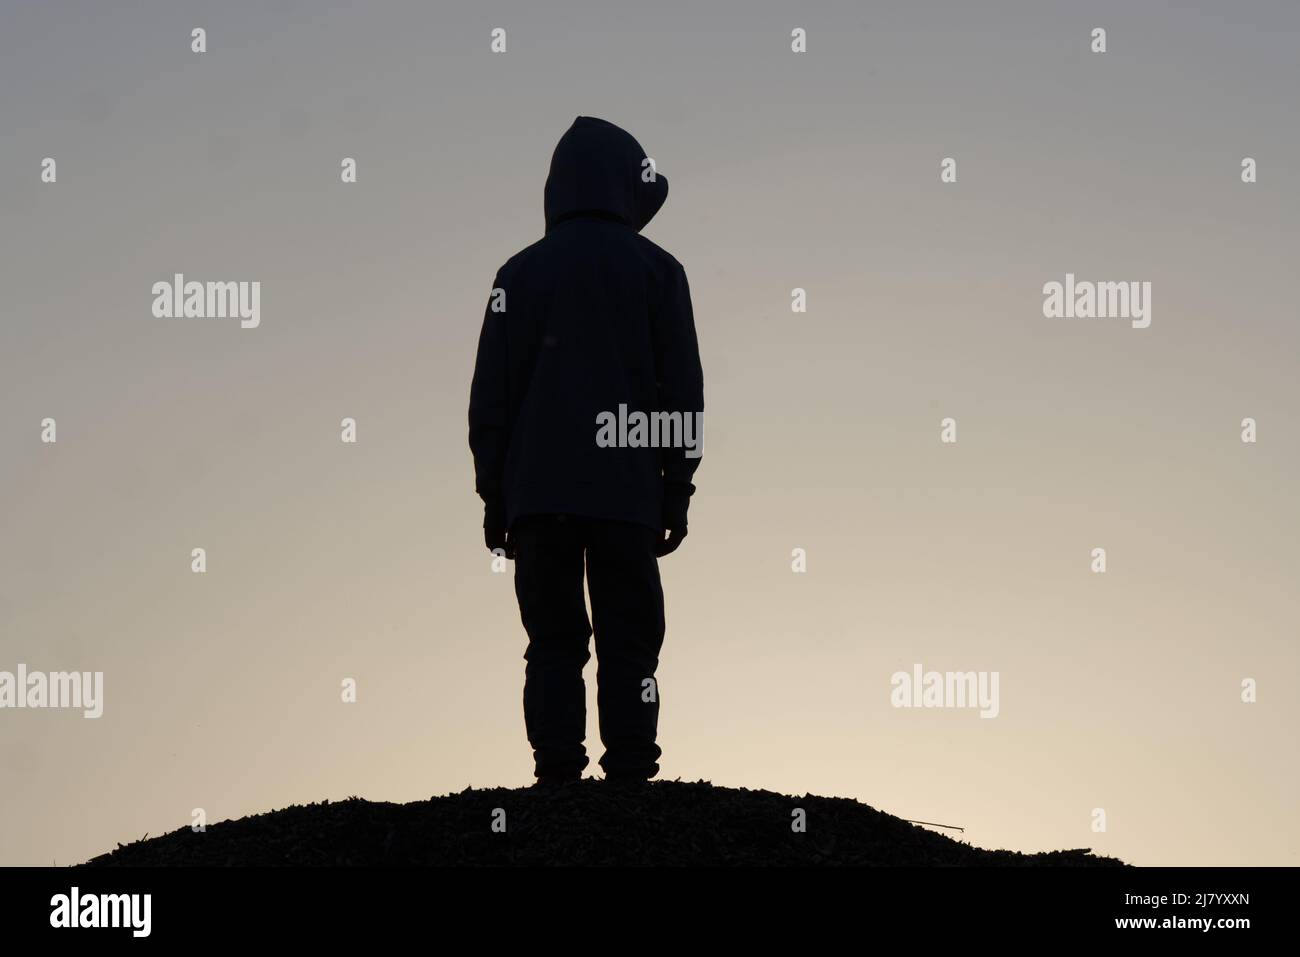 Silhouette eines jungen Teenagers, der auf dem Hügel bleibt. Traurig, Emotion, weinen, Drama, einsam, Depression und unglückliches Konzept Stockfoto